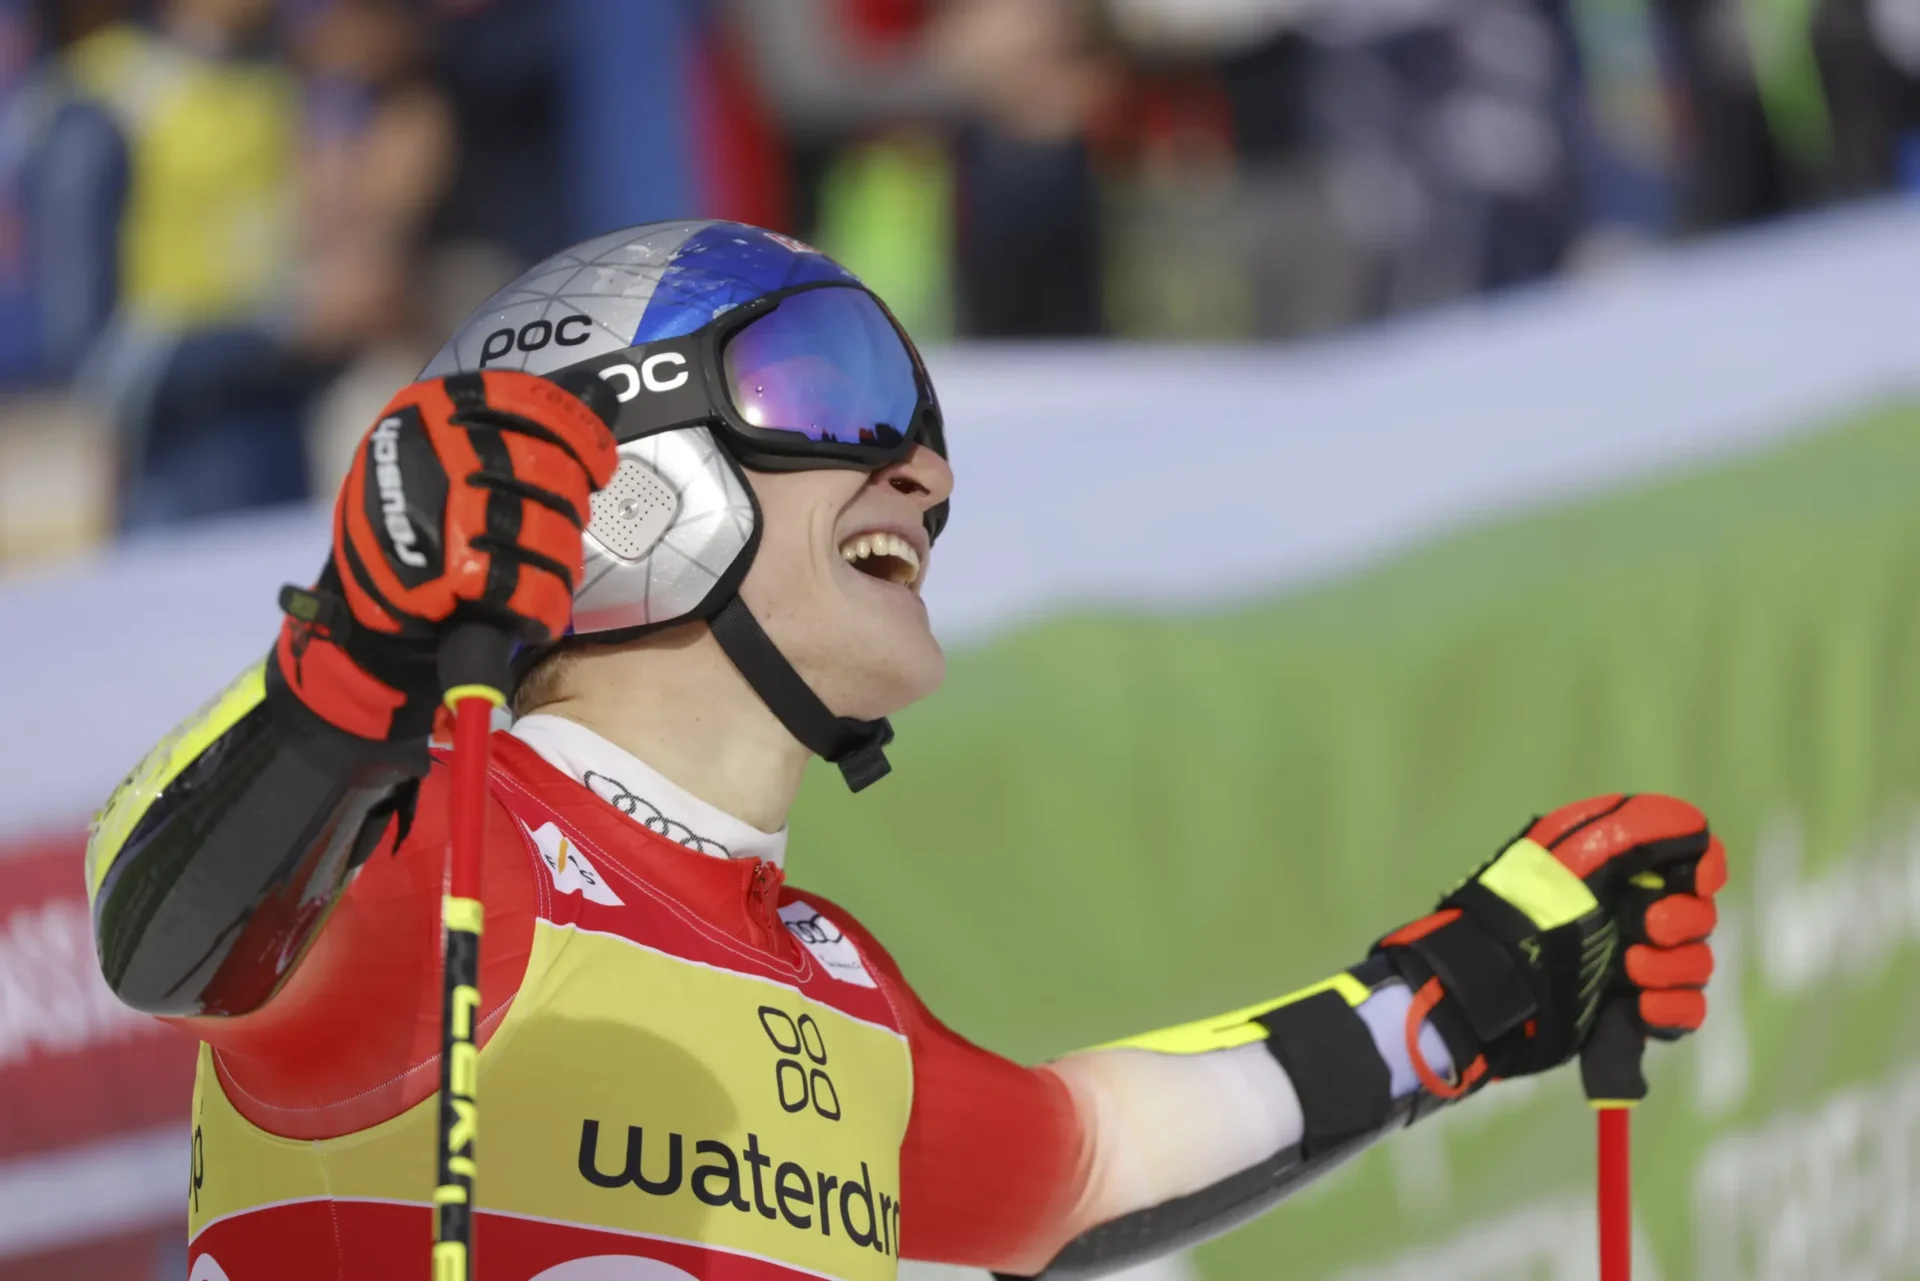 El esquiador suizo Odermatt gana el GS y se asegura el título de la disciplina